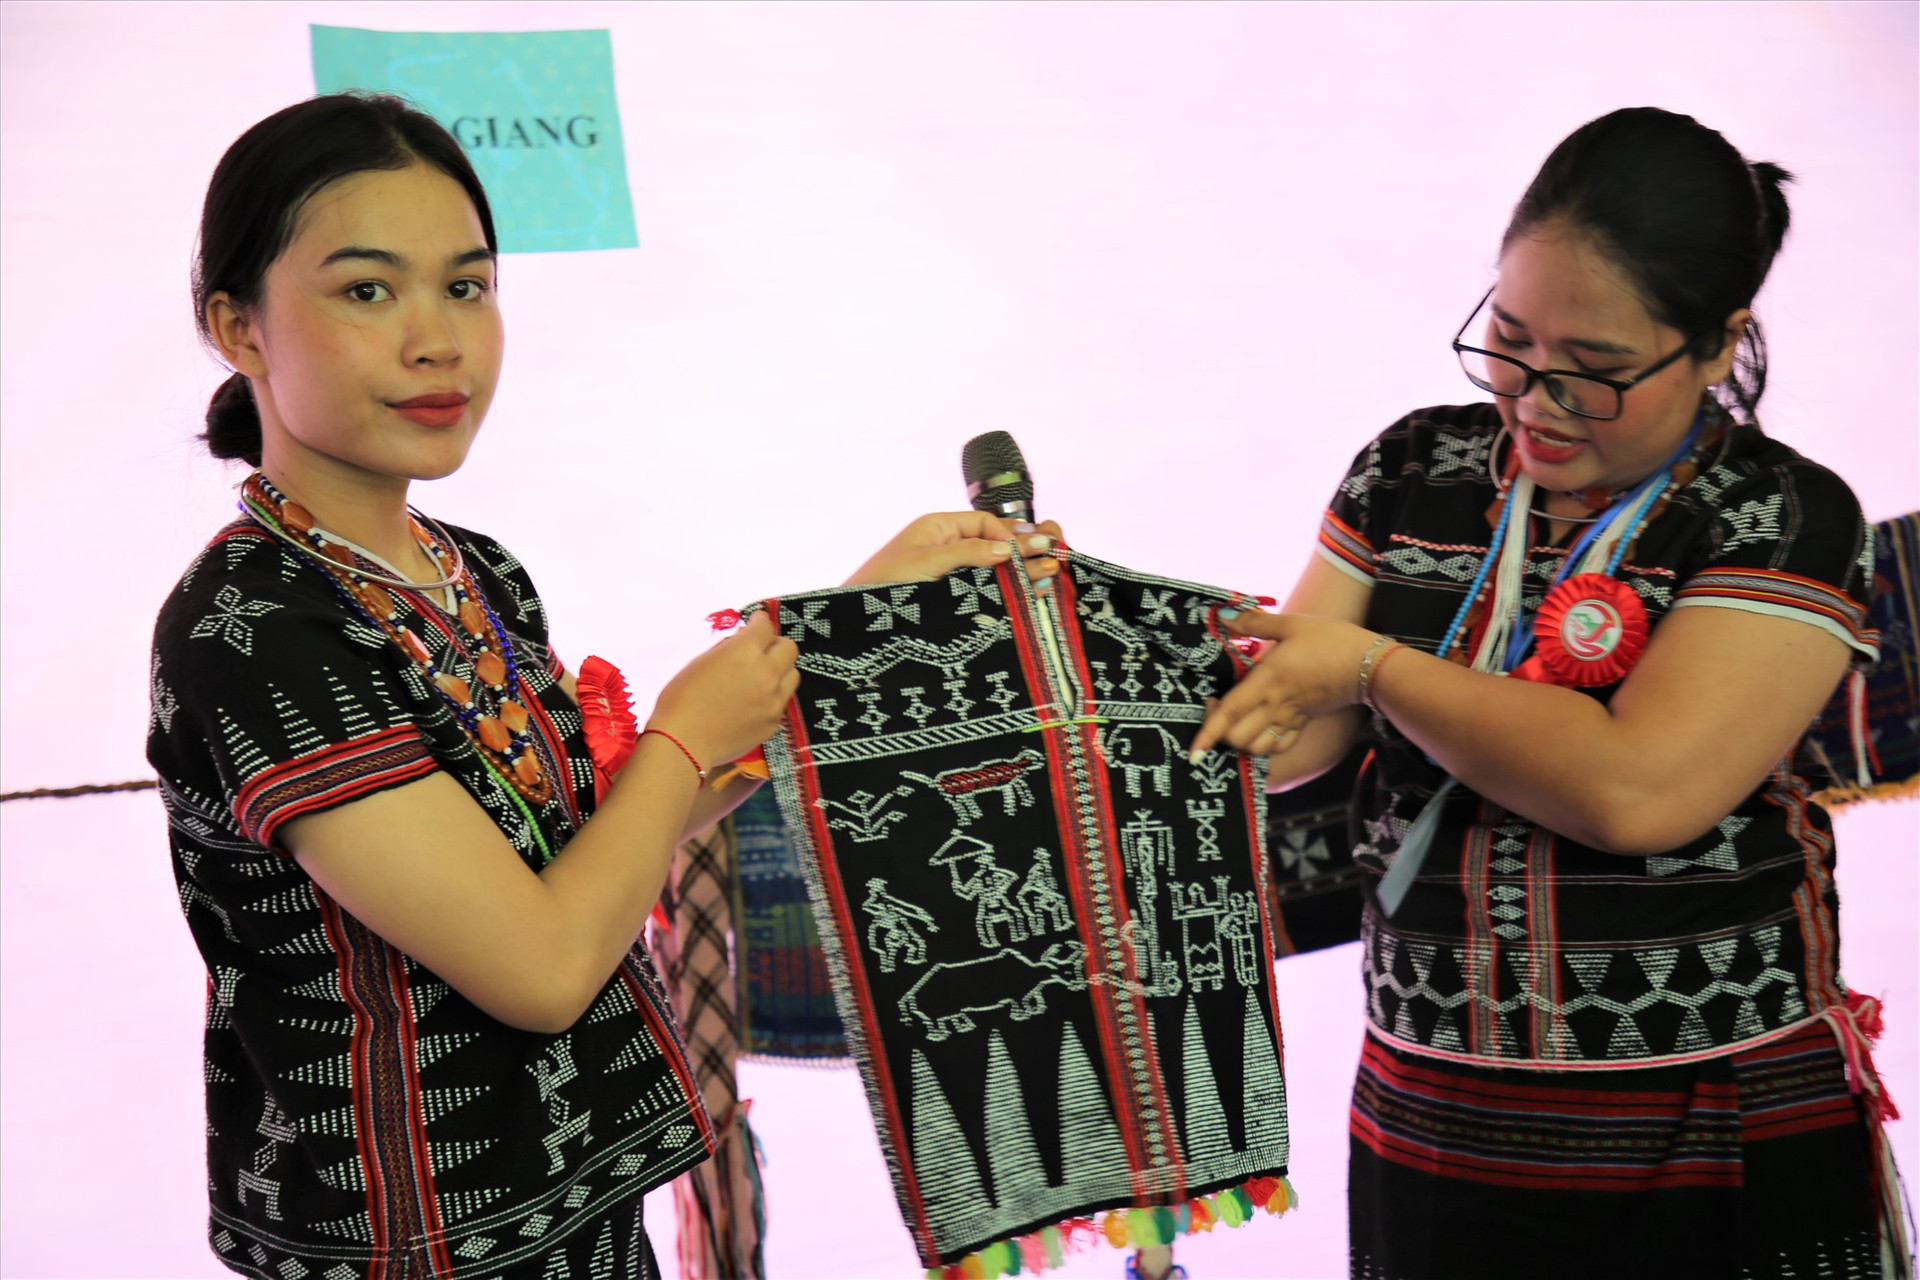 Thiếu nữ Cơ Tu ở huyện Tây Giang giới thiệu sản phẩm dệt độc đáo được làm ra từ quá trình sáng tạo của nghệ nhân địa phương. Ảnh: H.Đ.G